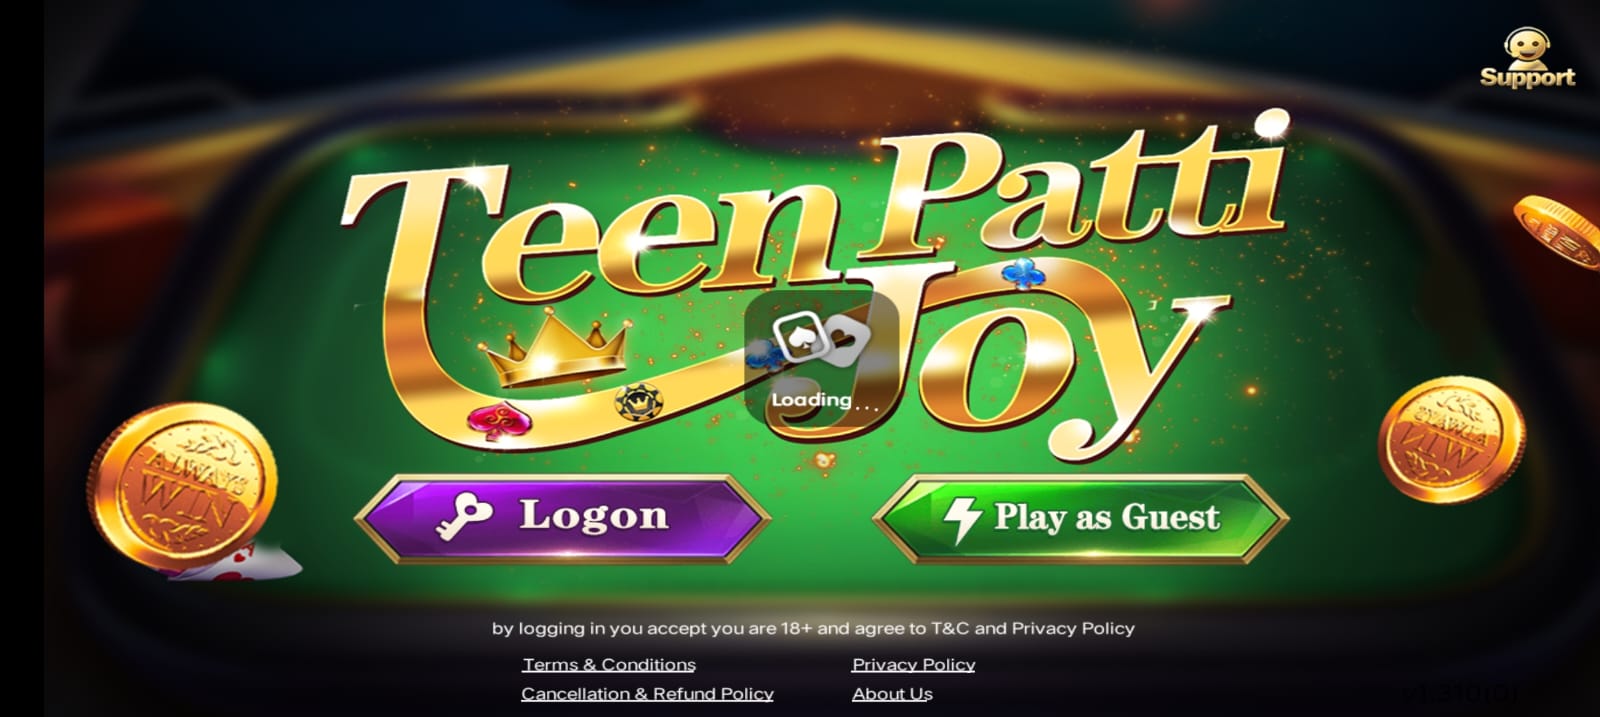 Register Teen Patti Joy App